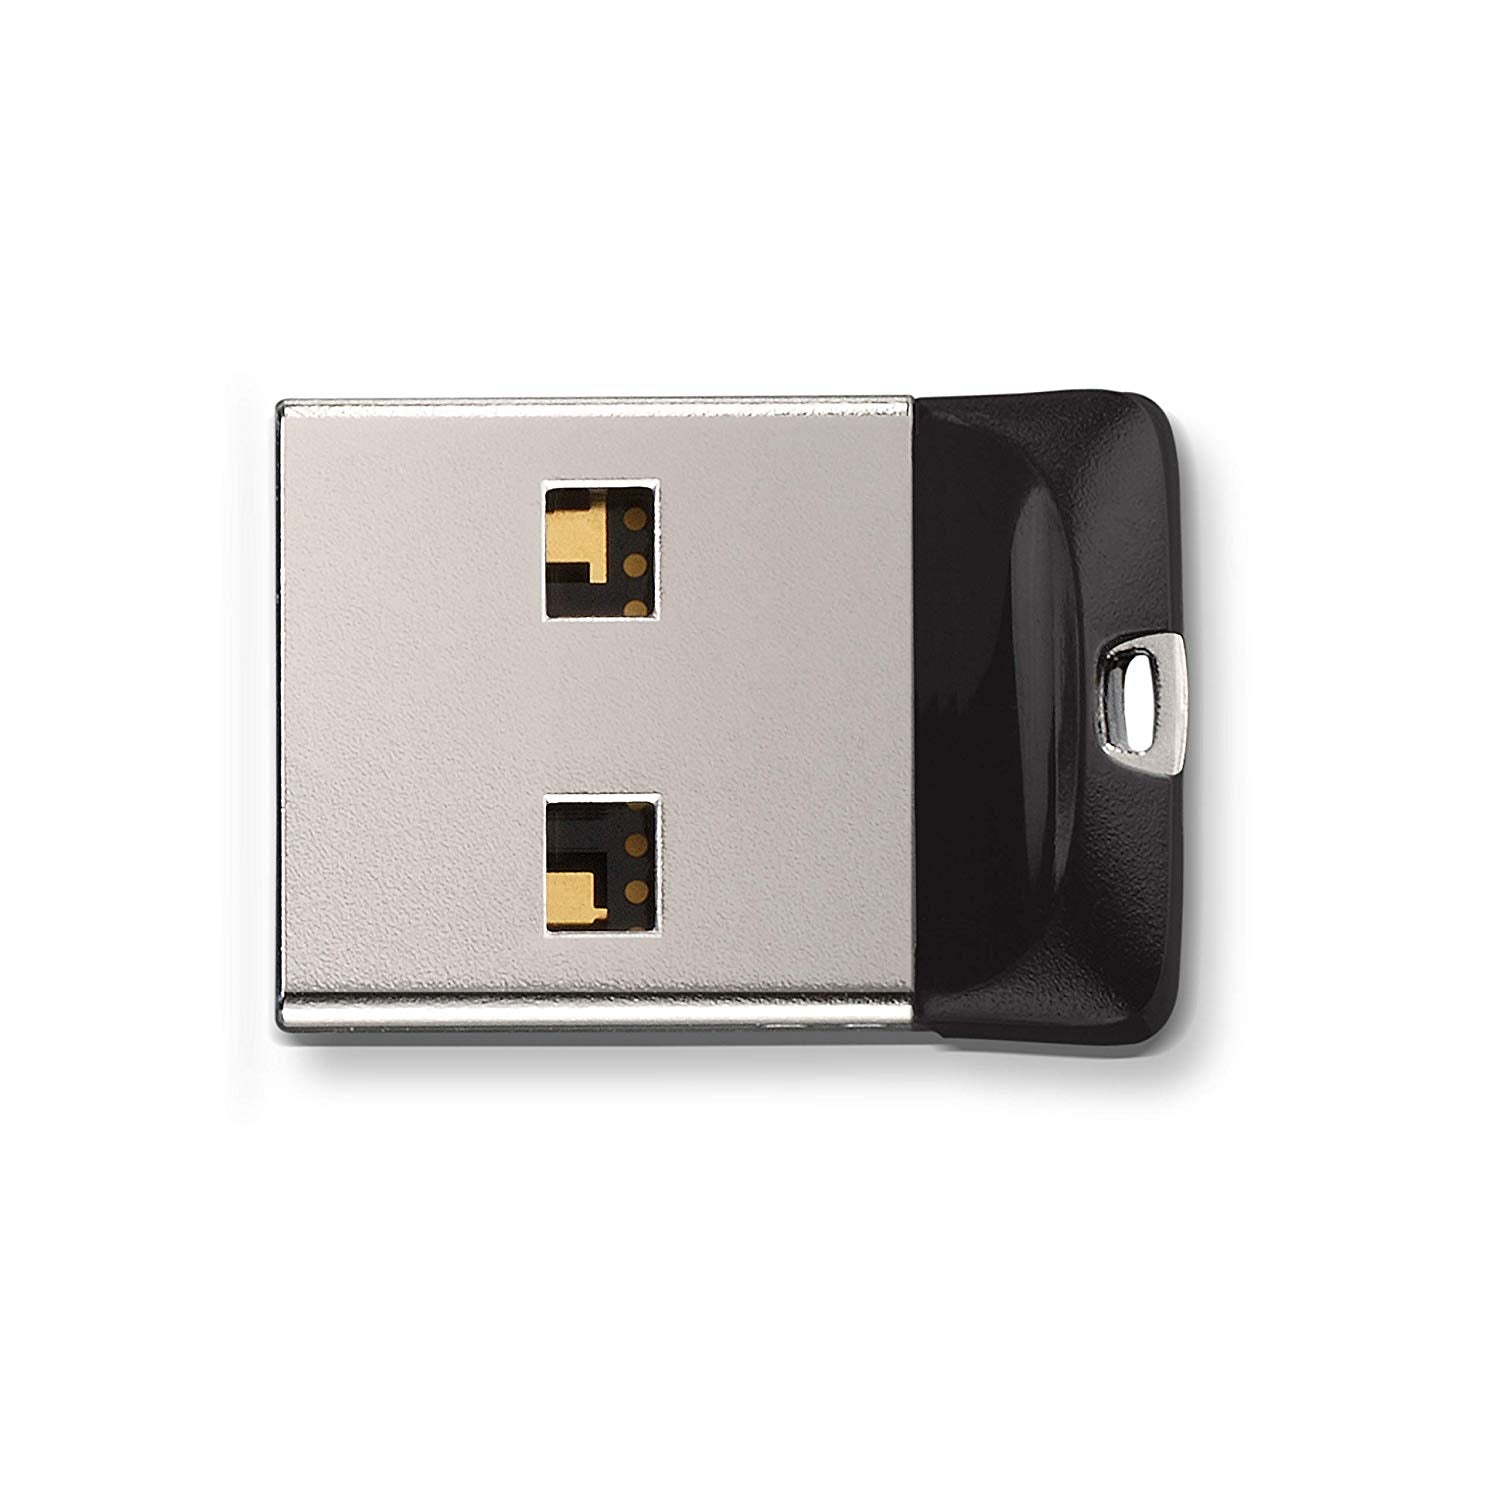 SanDisk Cruzer Fit USB 2.0 Flash Drive - Offer Games